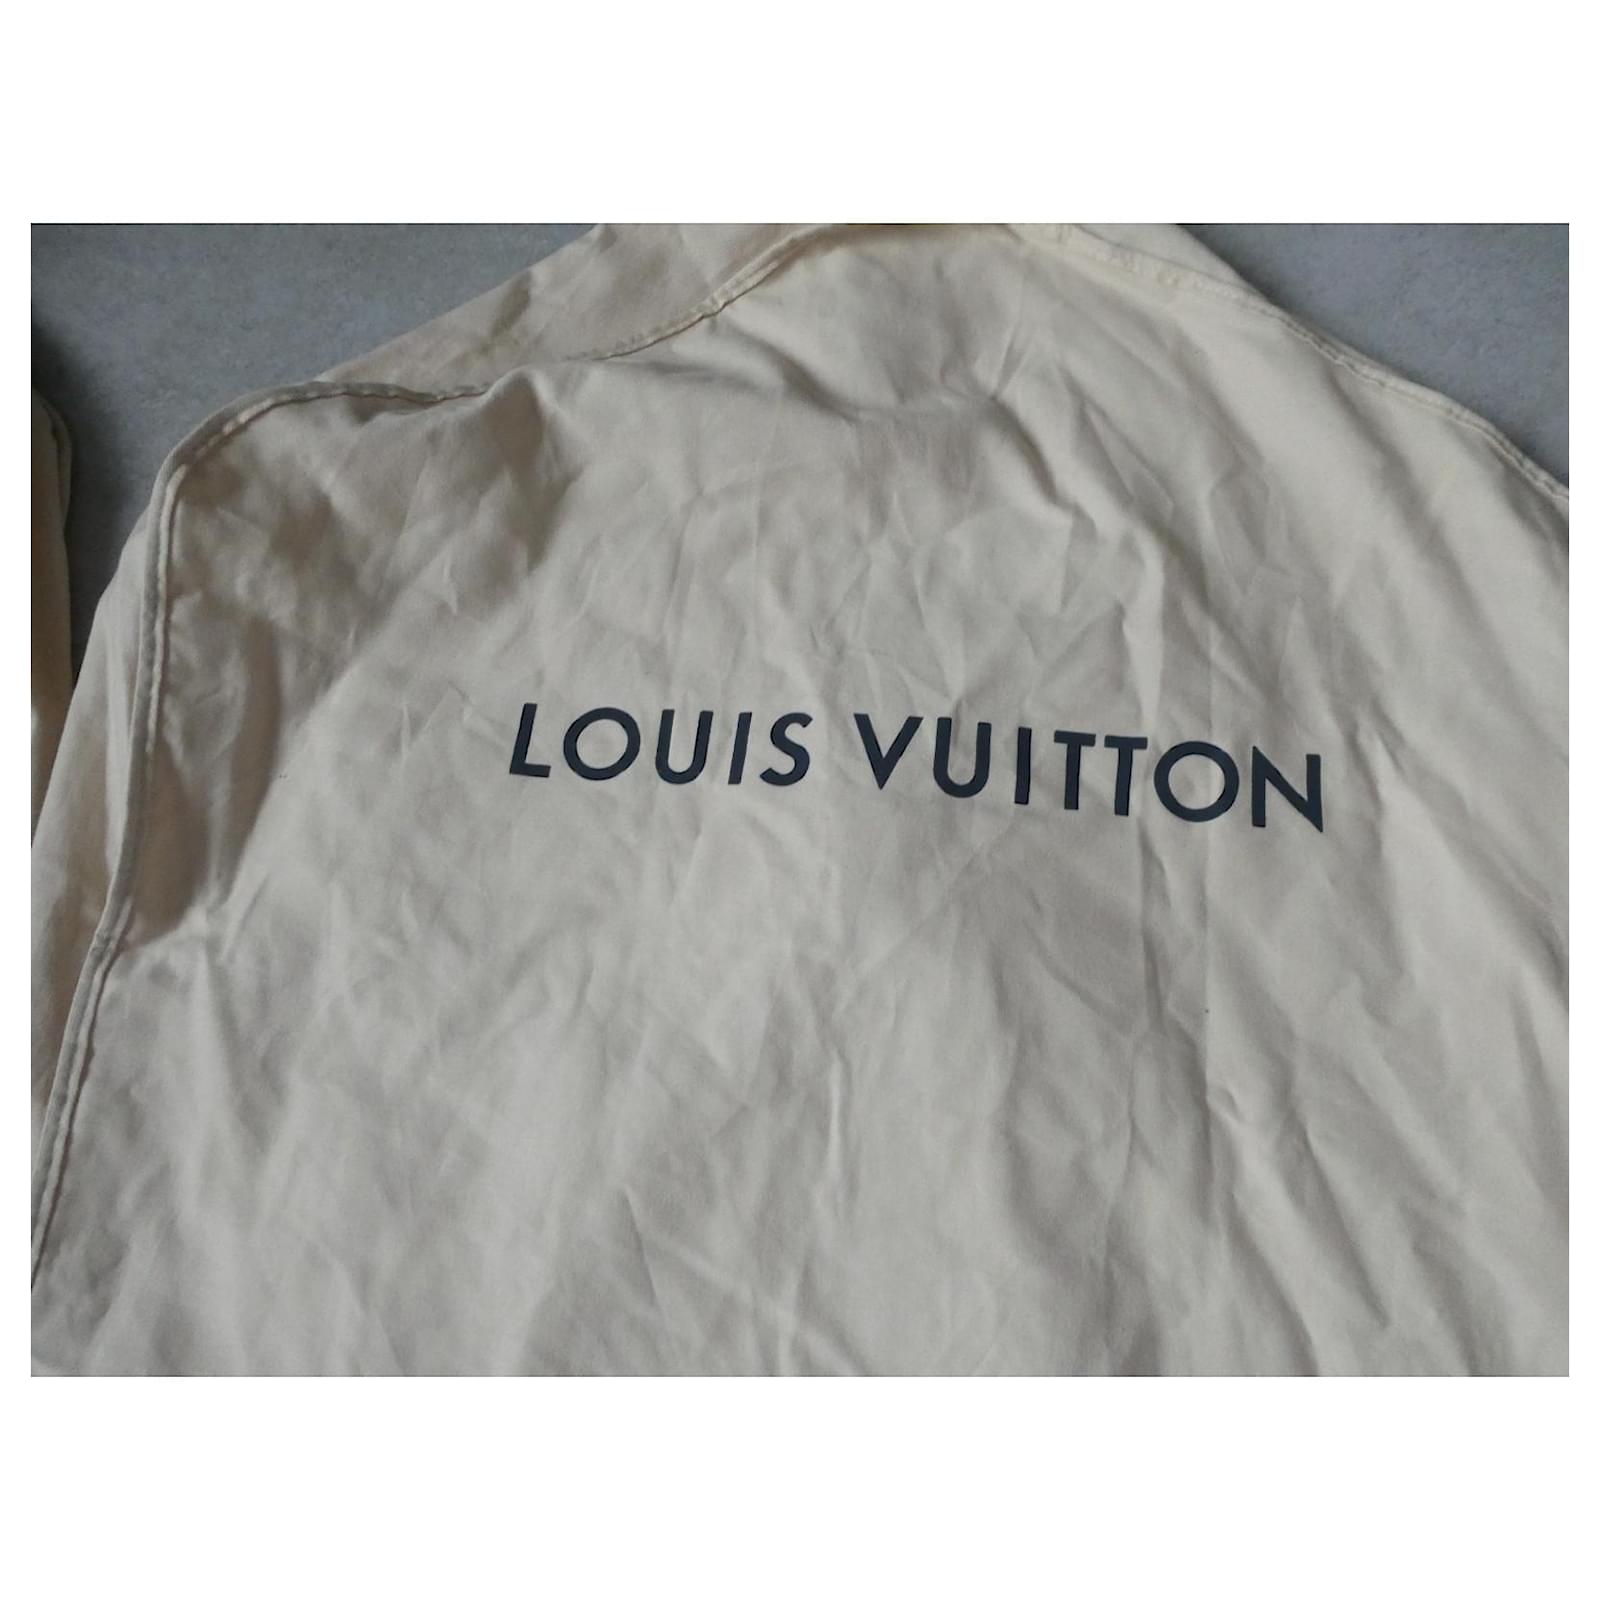 Carteras Louis Vuitton Usadas